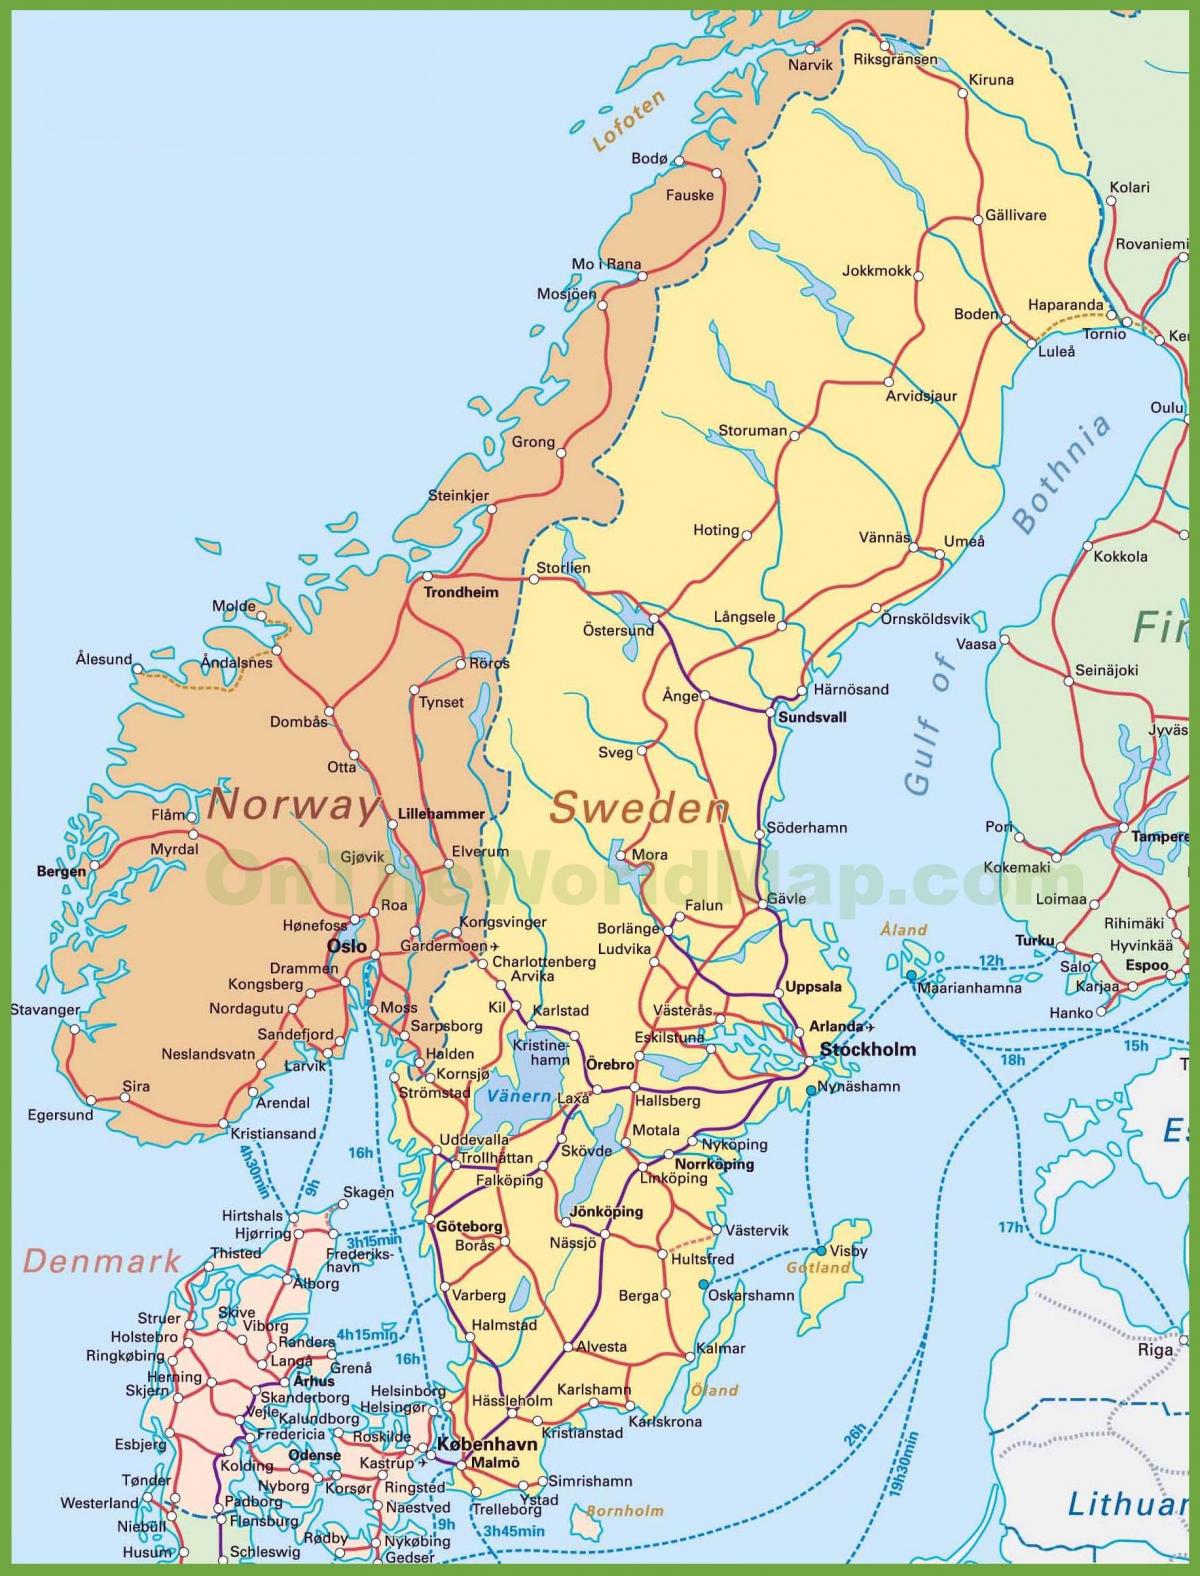 نقشه از دانمارک و نروژ